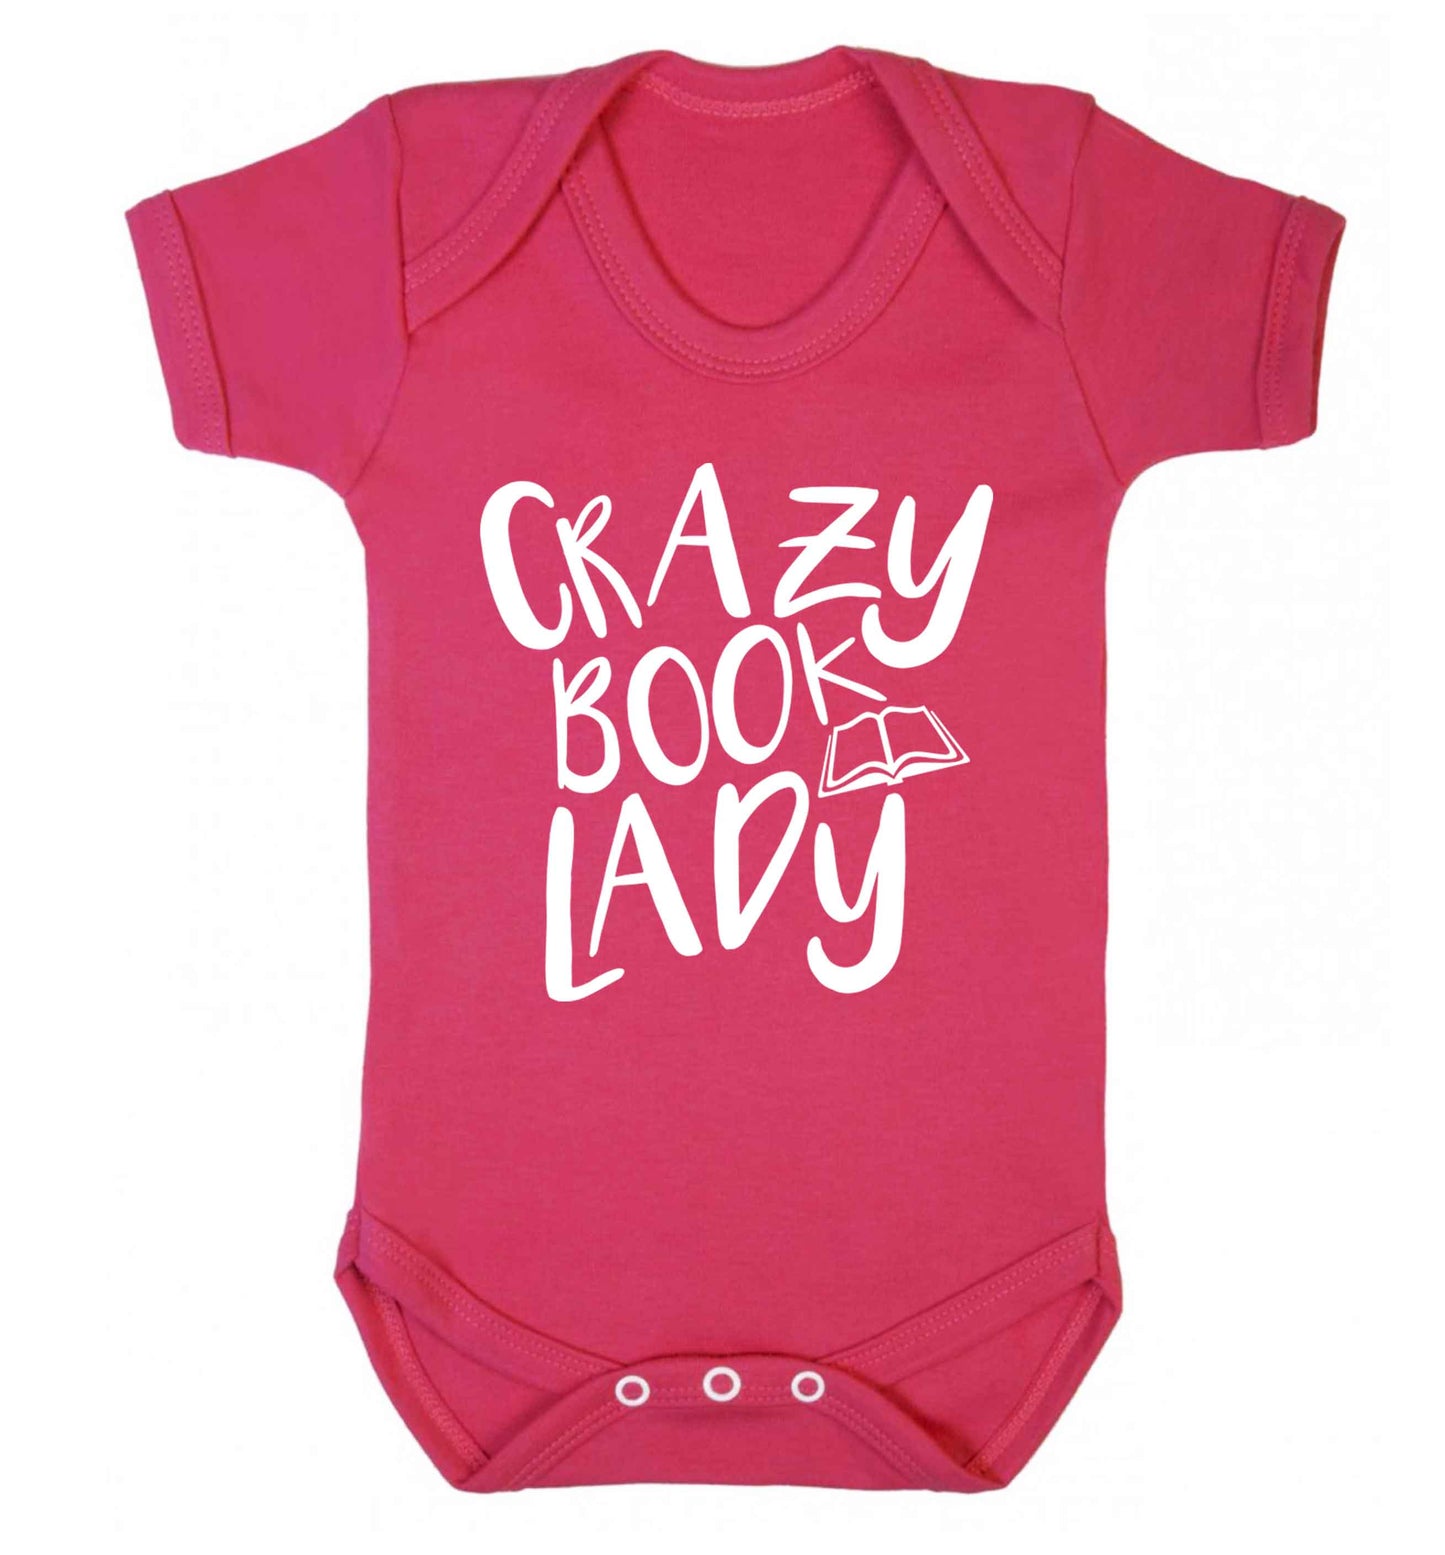 Crazy book lady Baby Vest dark pink 18-24 months